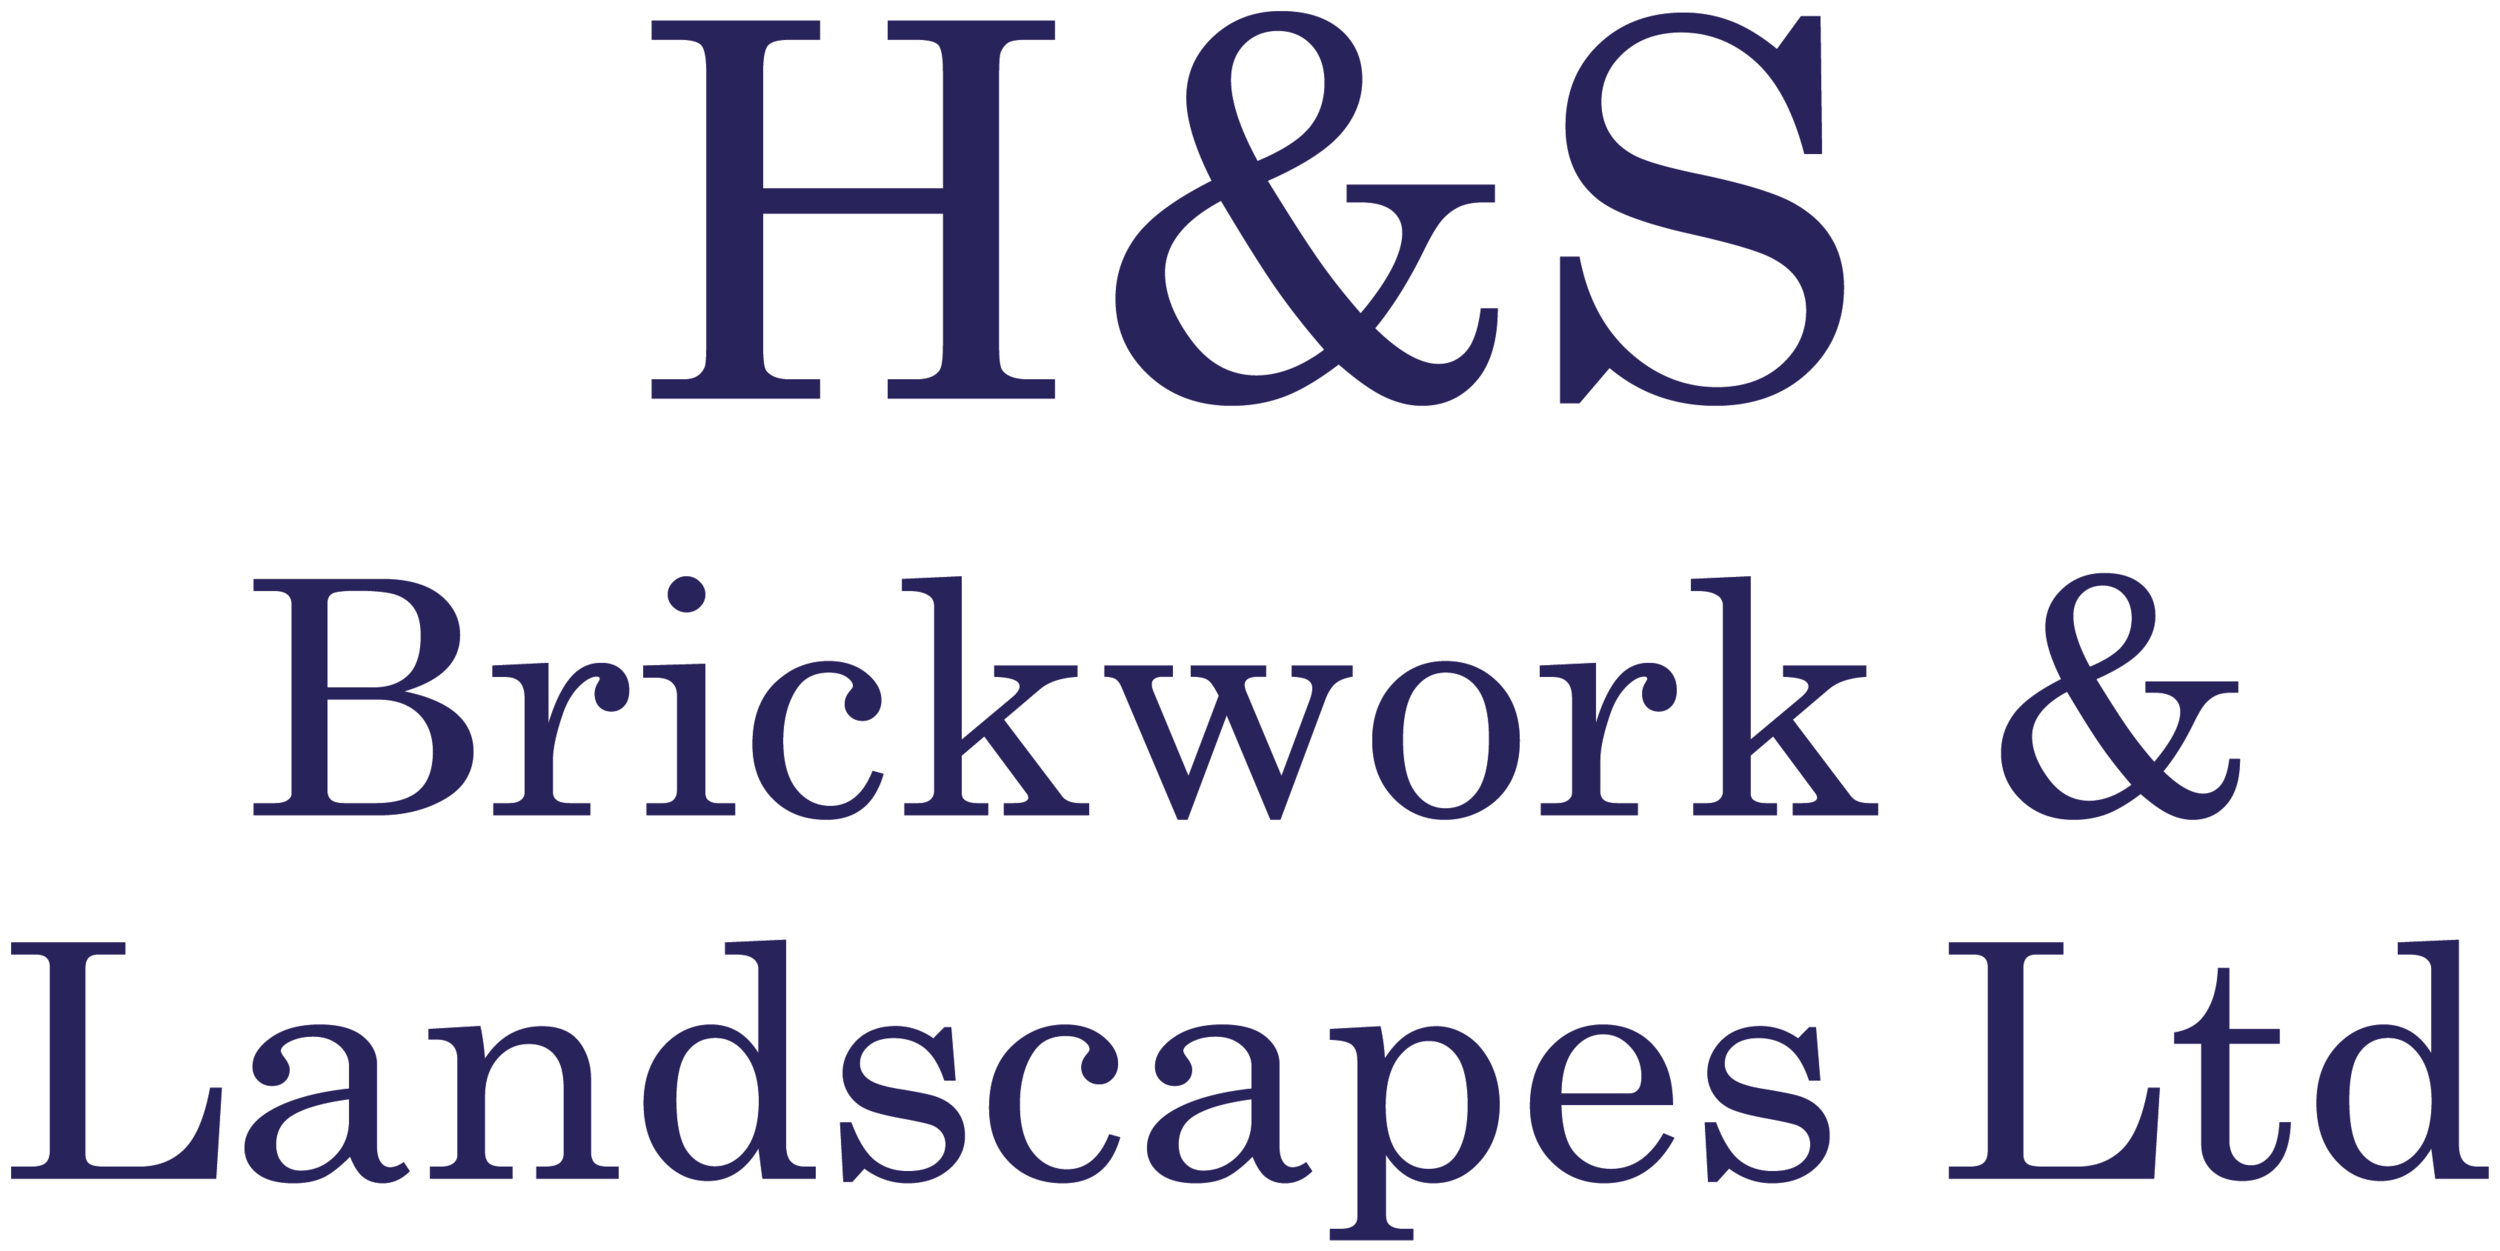 H&amp;S Brickwork and Landscapes